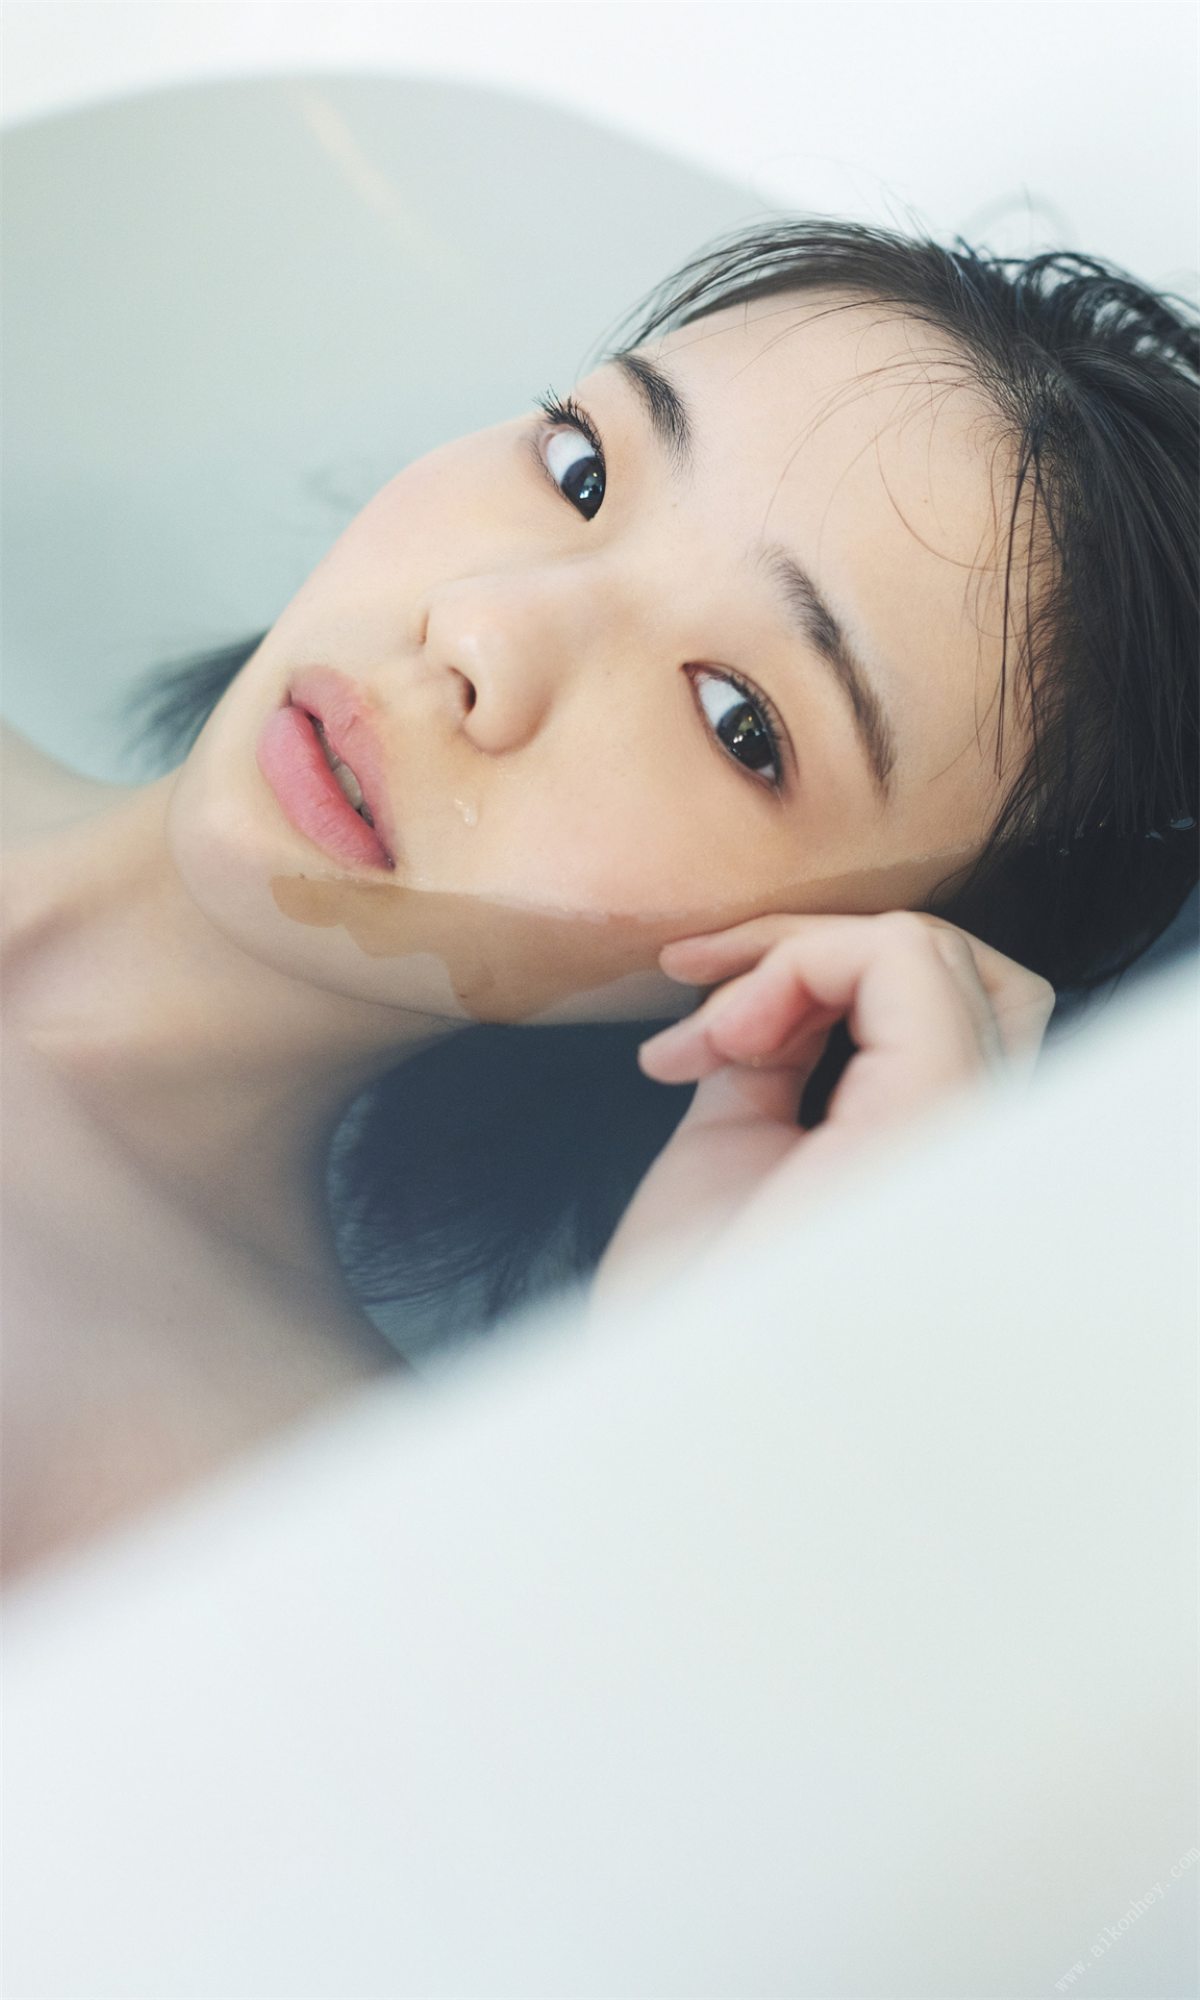 Weekly Photobook 2022 03 14 Hina Kikuchi 菊地姫奈 Harumeku honomeku 春めく、ほのめく 0057 8954156265.jpg